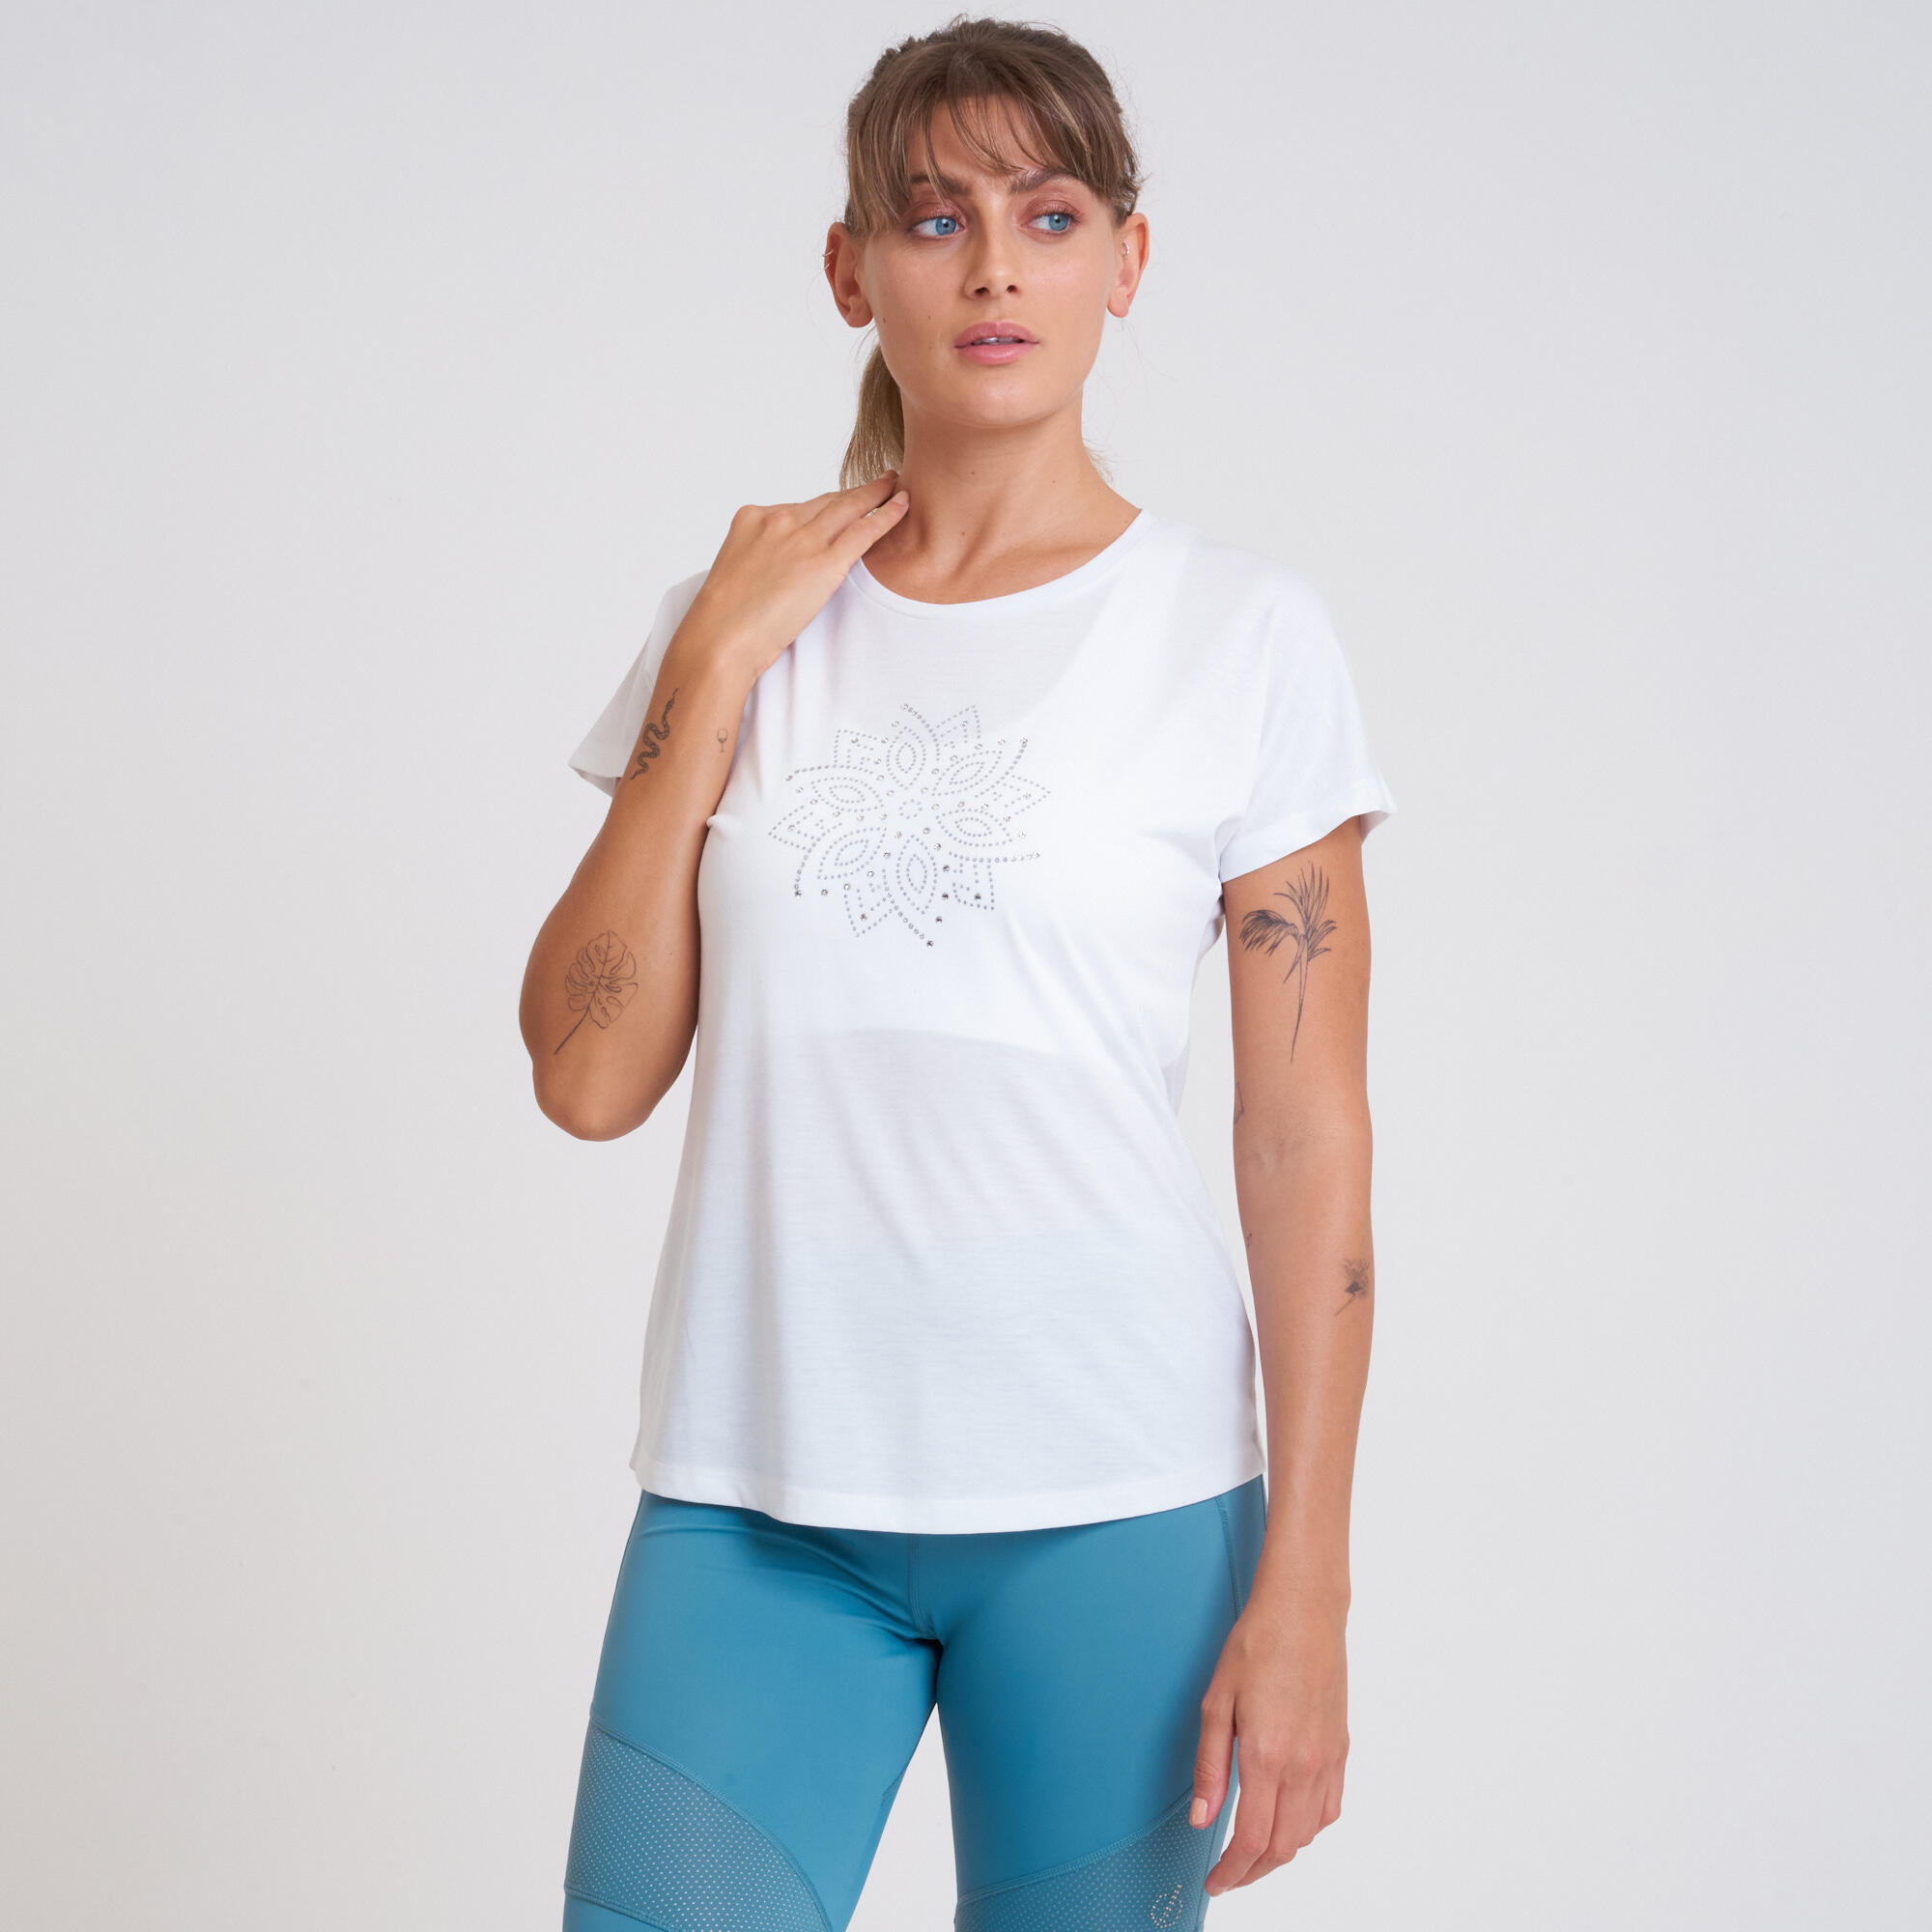 DARE 2B Crystallize Women's Fitness Short Sleeve  T-Shirt - White